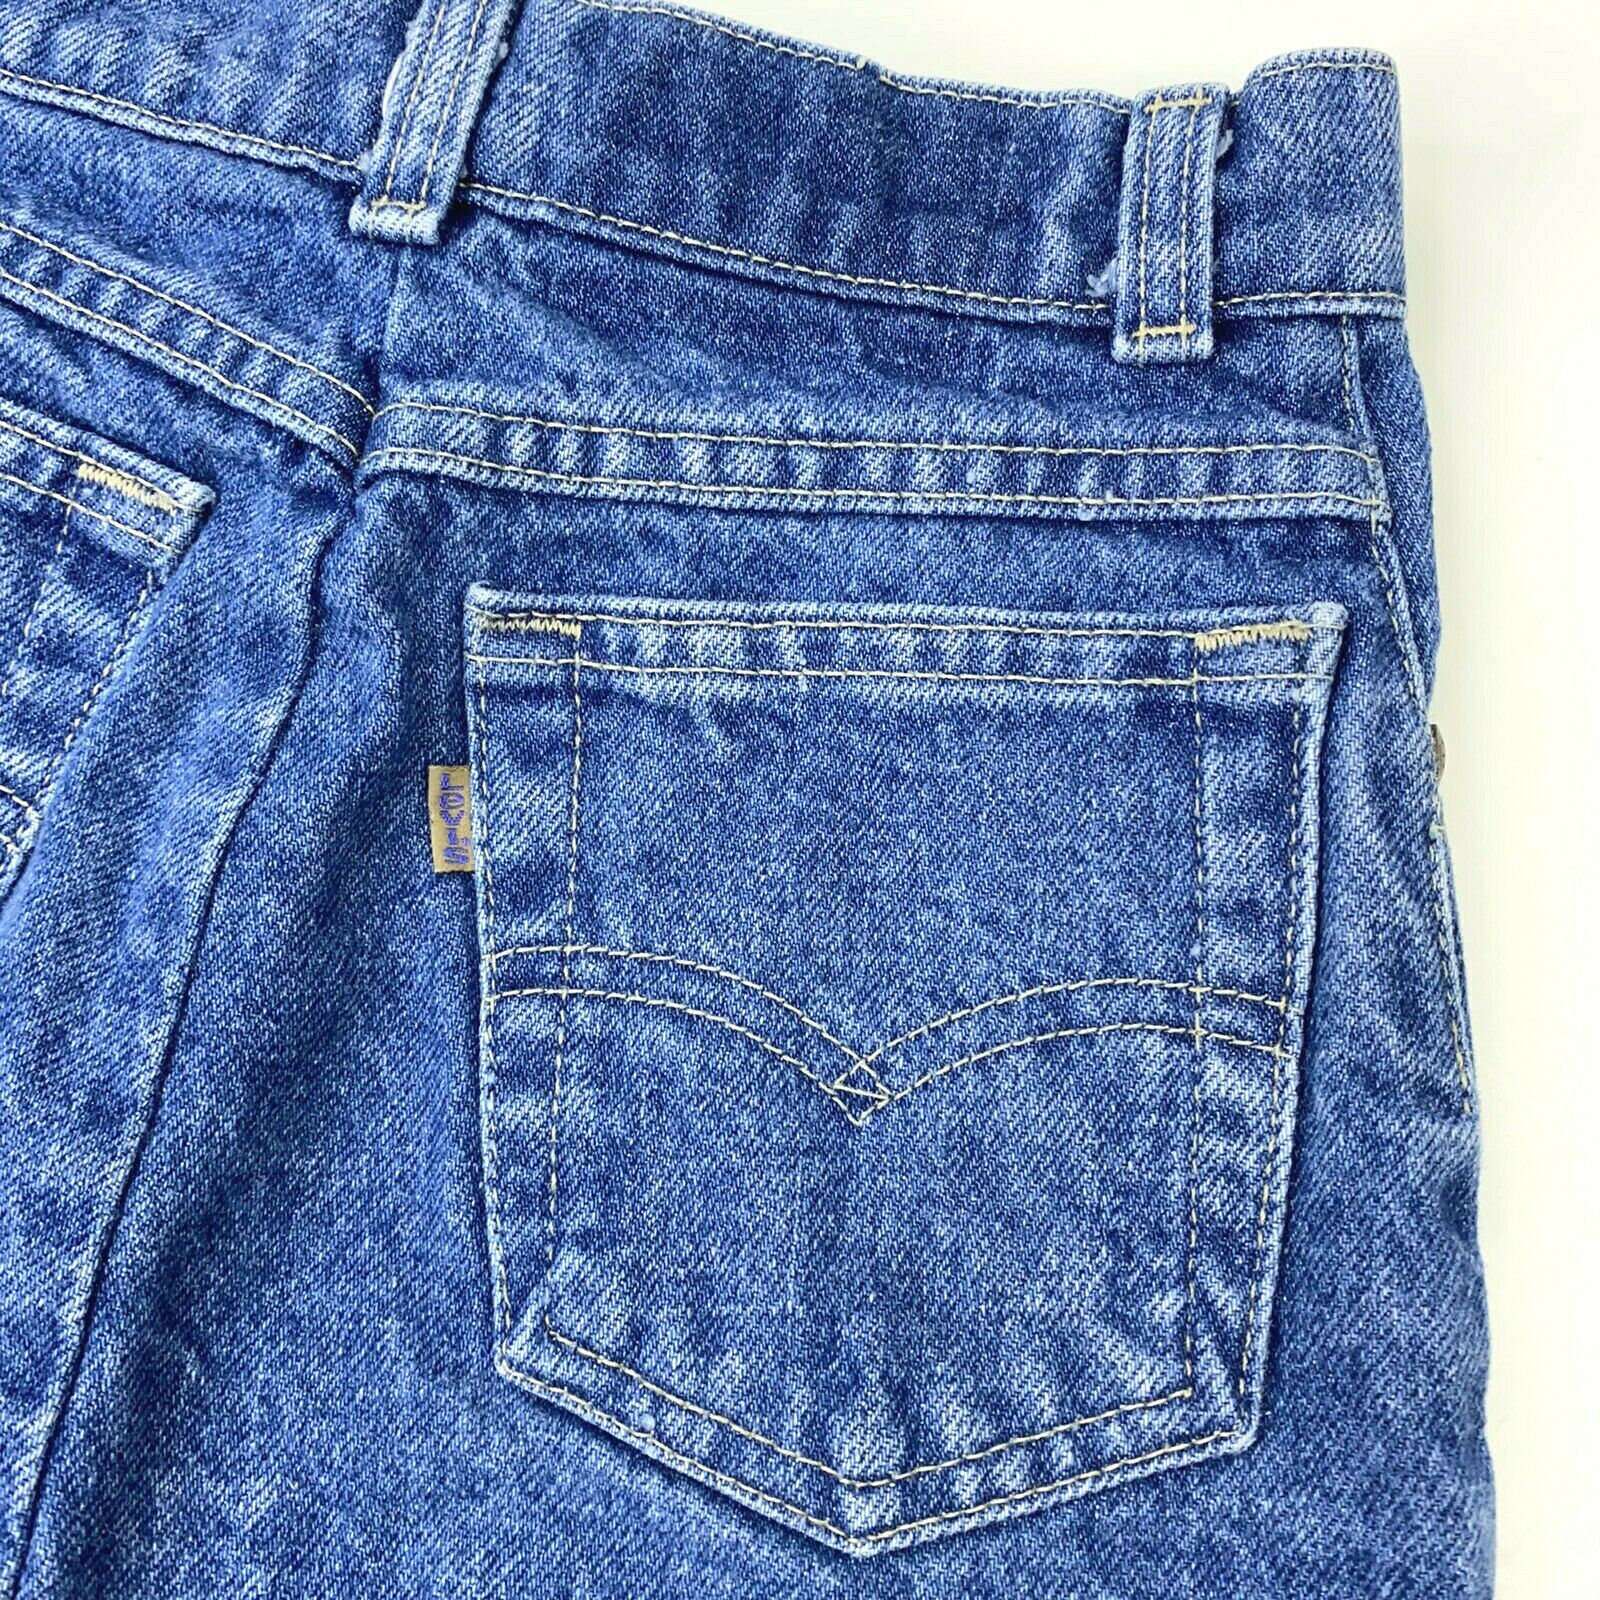 Vintage 90s Levis Gold Tab Dark Wash Blue Jean Denim Skirt - Girls 12 - Usa Made